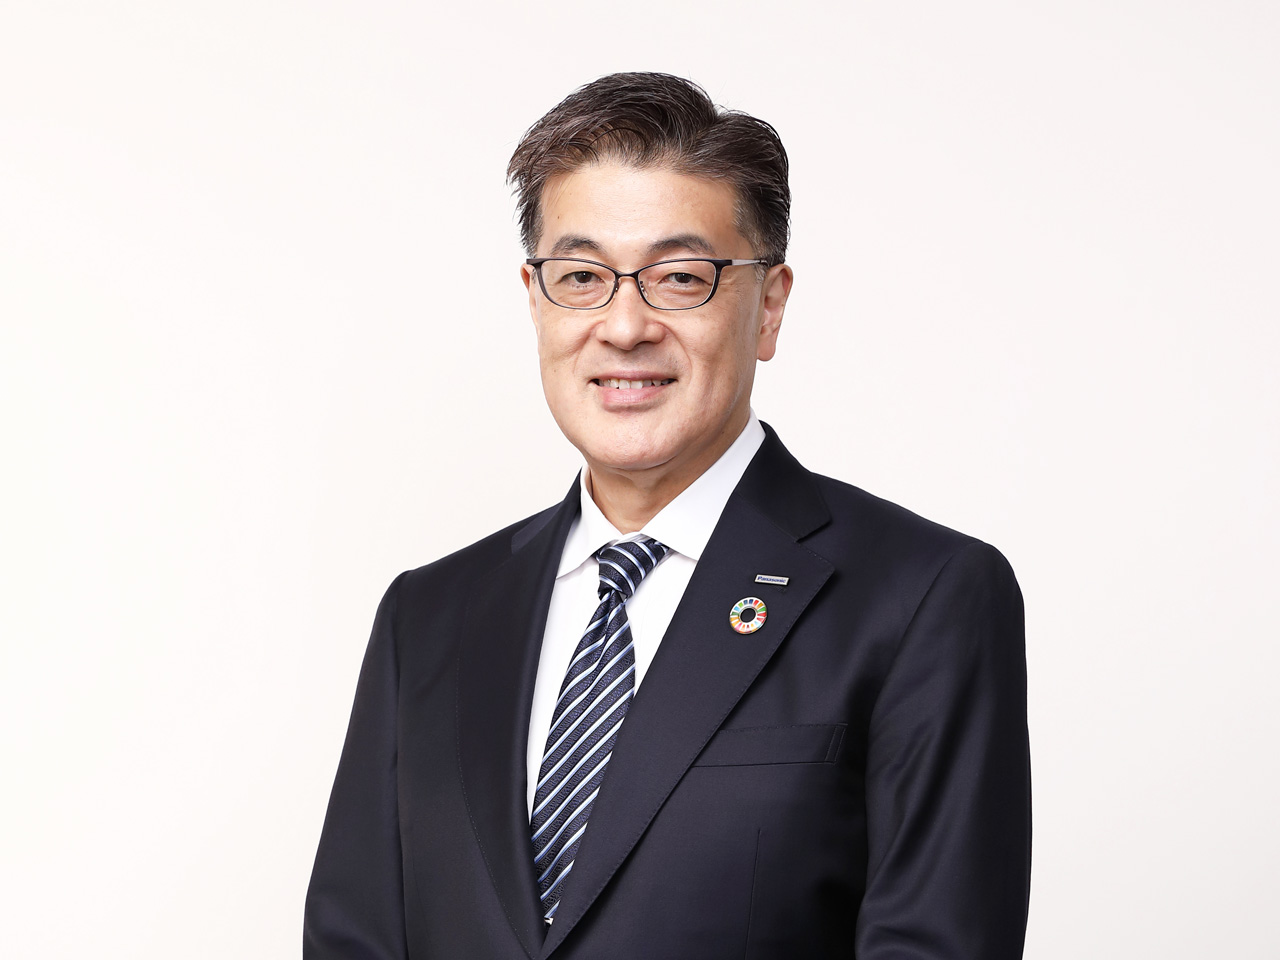 ภาพ: Yuki Kusumi ตัวแทนกรรมการบริษัท ประธาน ประธานเจ้าหน้าที่บริหารกลุ่มบริษัท Panasonic Holdings Corporation